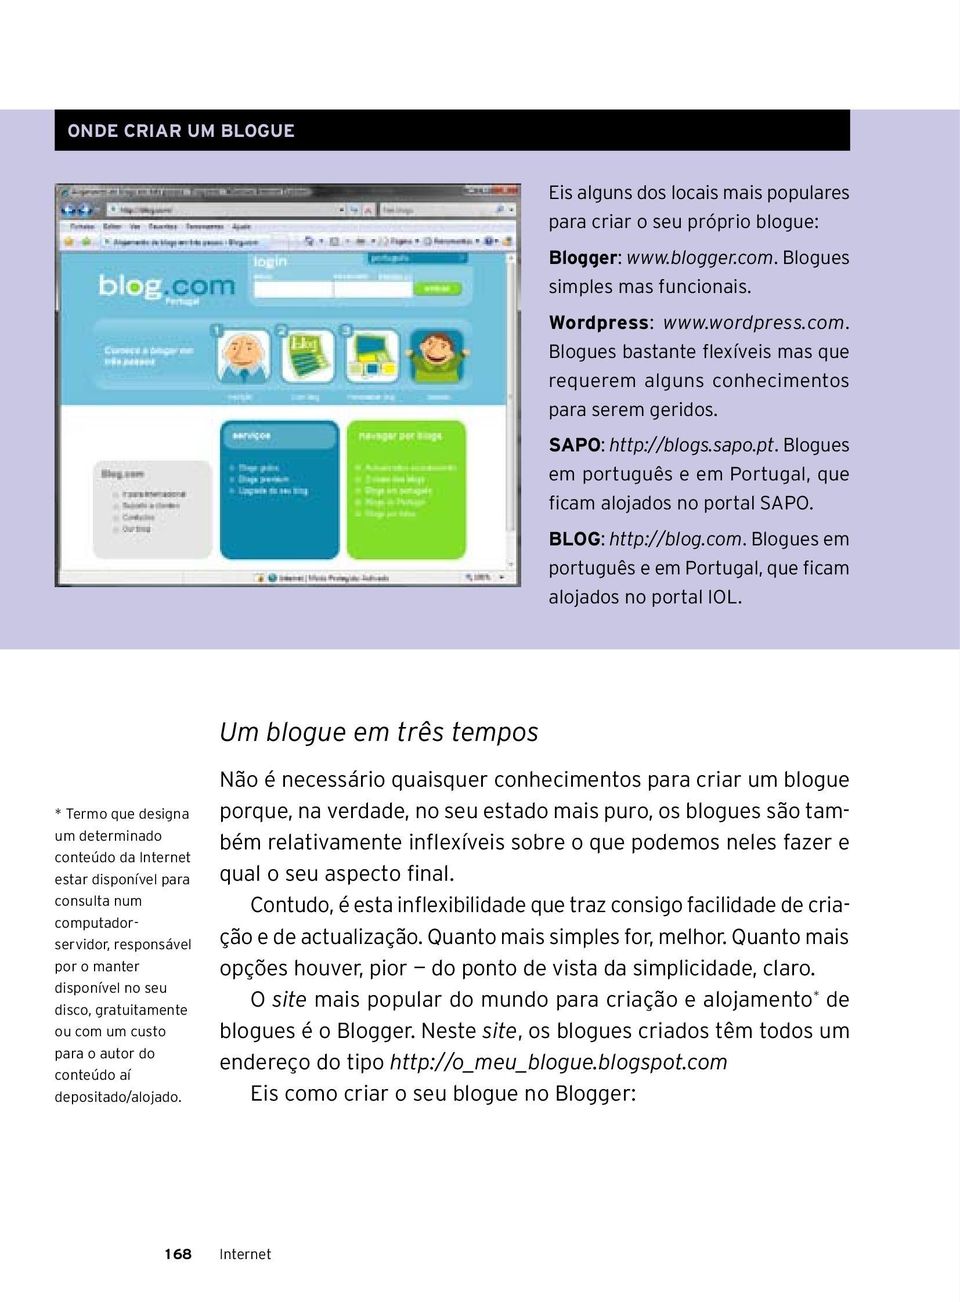 Blogues em português e em Portugal, que ficam alojados no portal SAPO. BLOG: http://blog.com. Blogues em português e em Portugal, que ficam alojados no portal IOL.